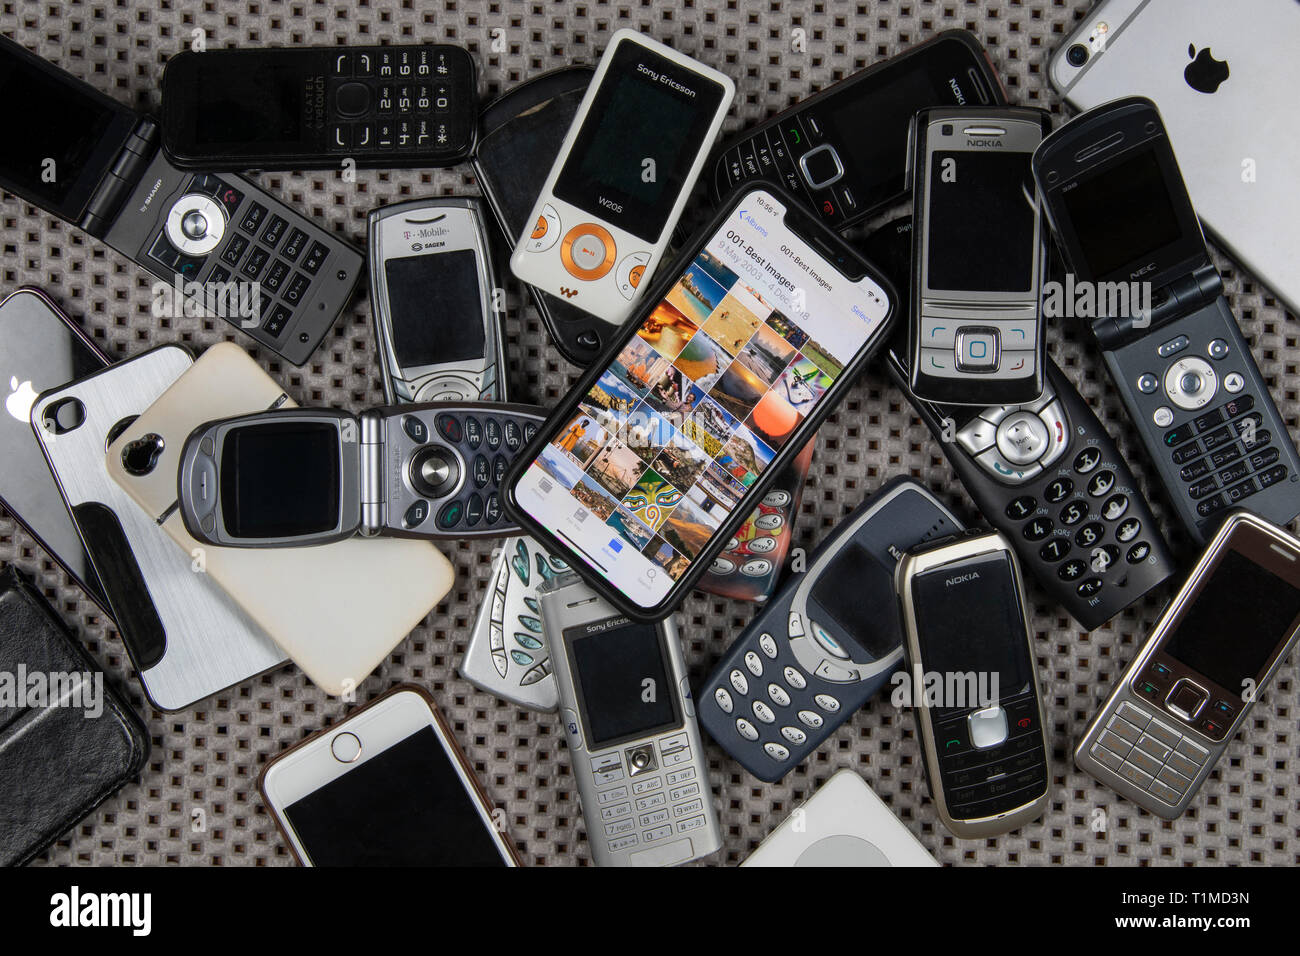 Telefoni obsoleti immagini e fotografie stock ad alta risoluzione - Alamy